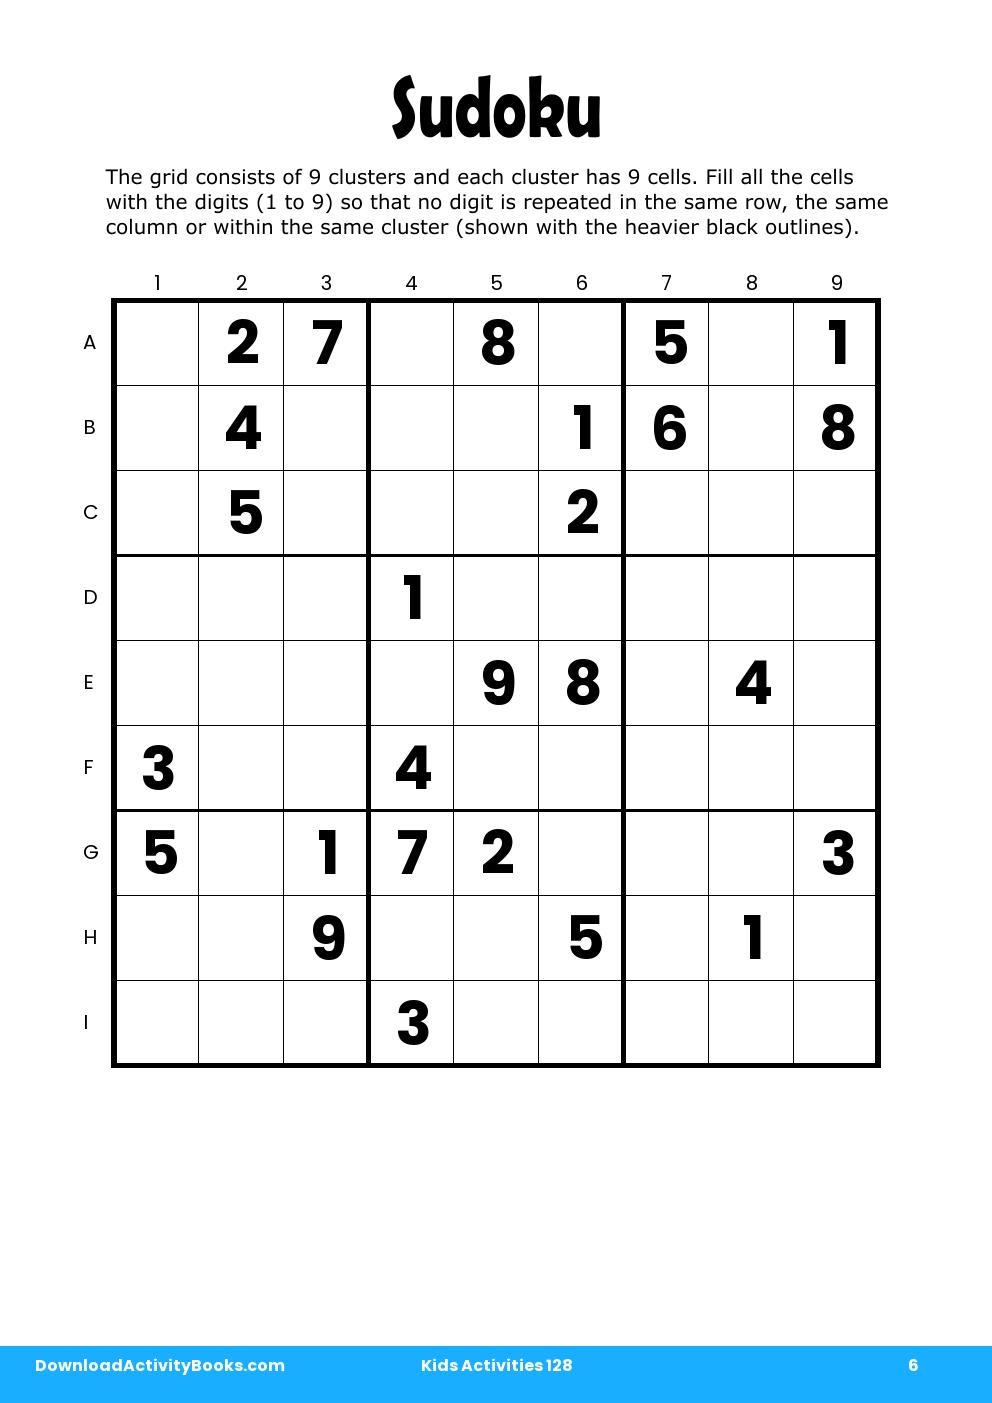 Sudoku in Kids Activities 128